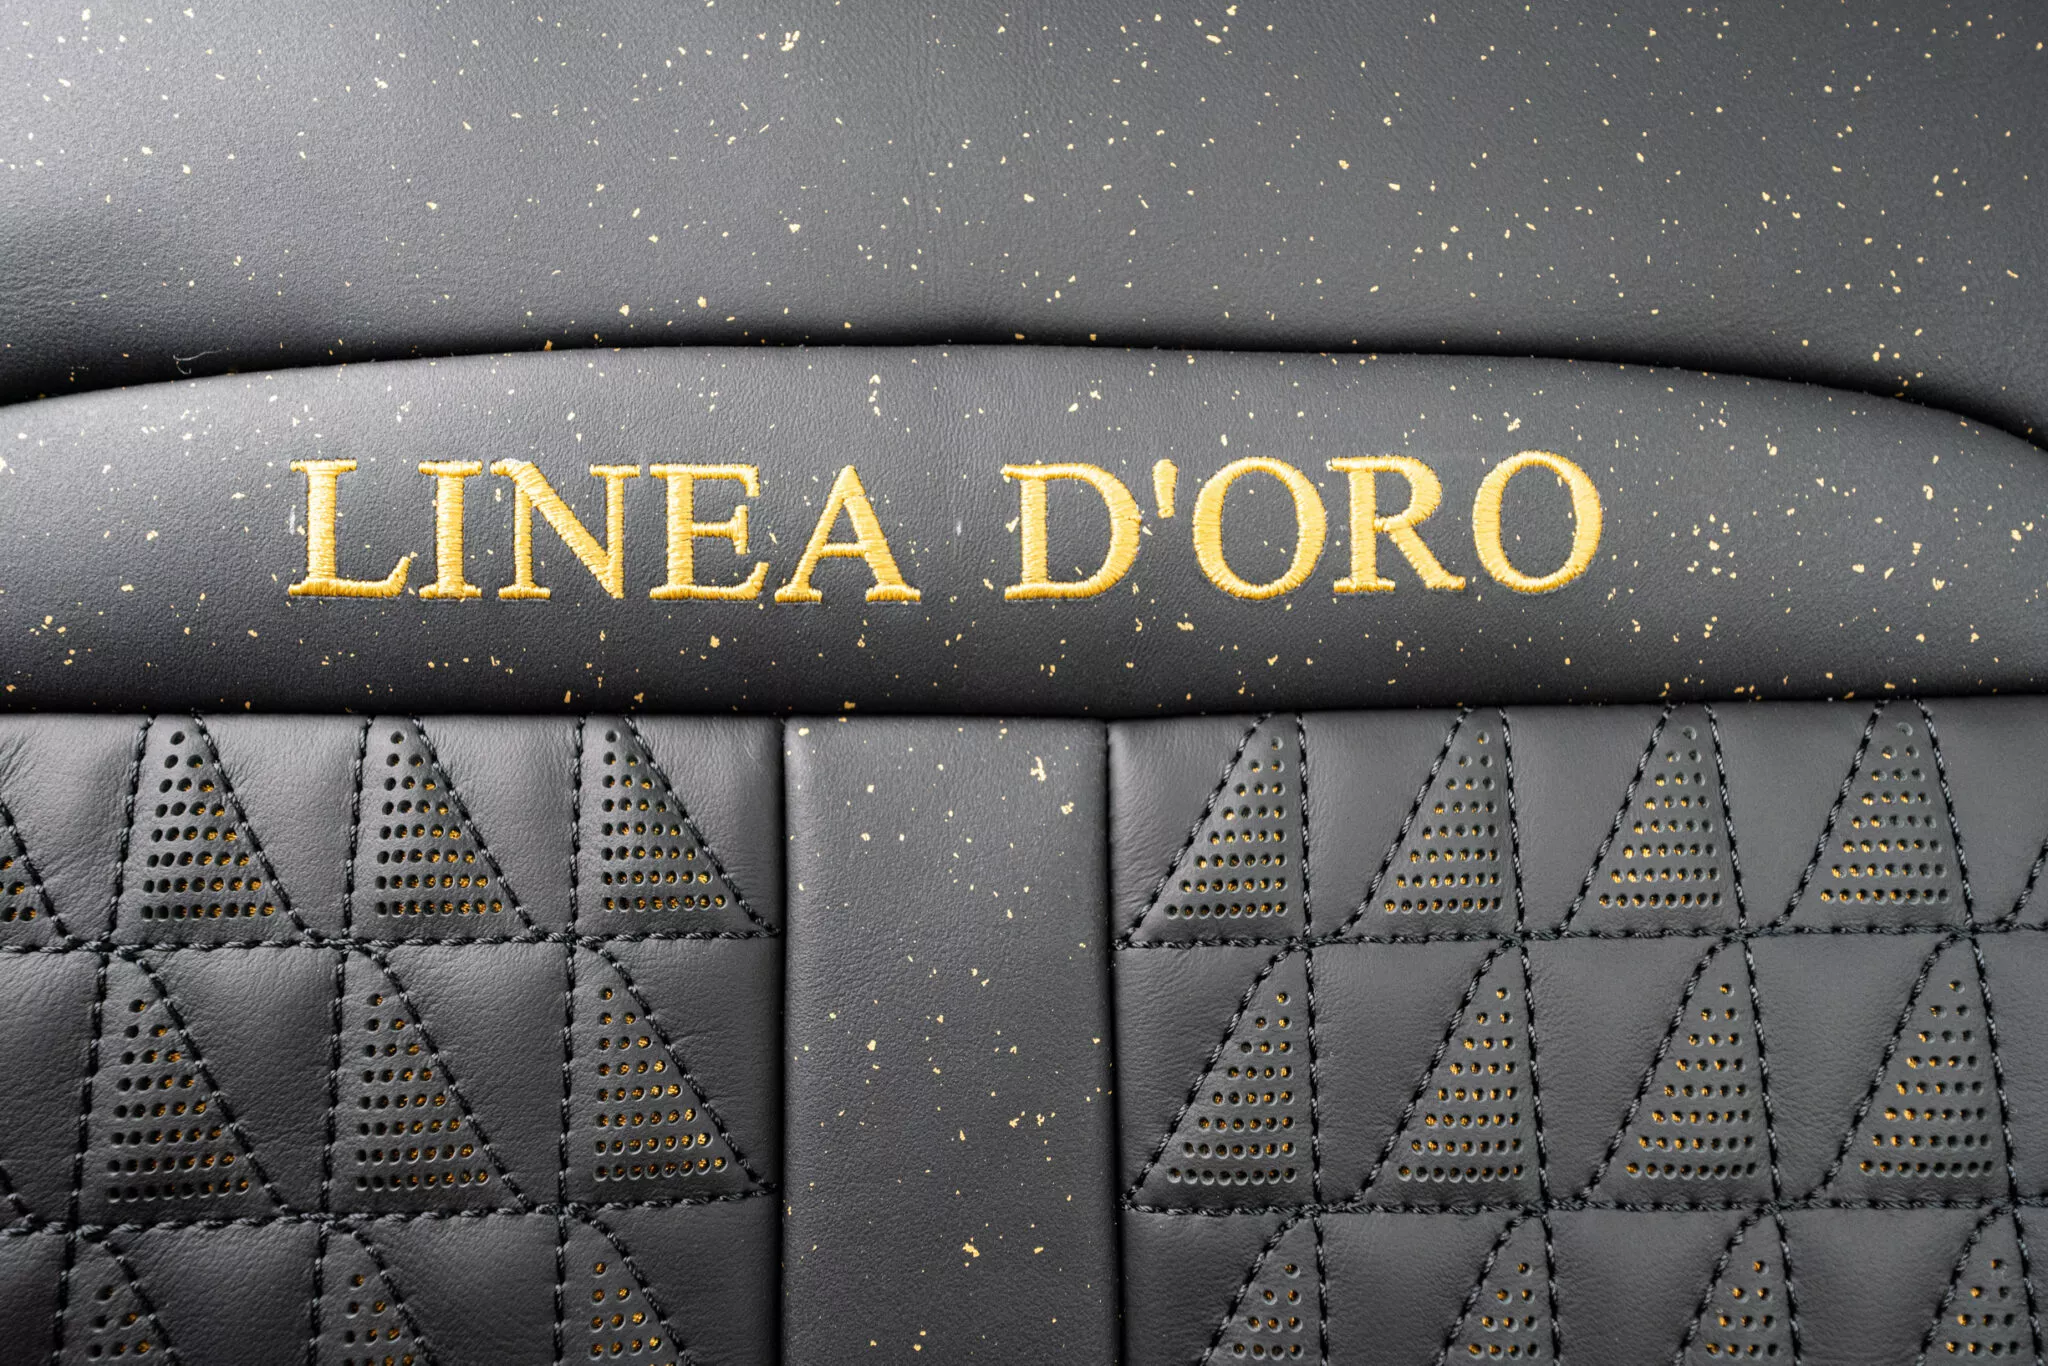 Rolls Royce Cullinan bản độ Mansory dát vàng cực chất mansory-linea-doro-21-2048x1366.webp